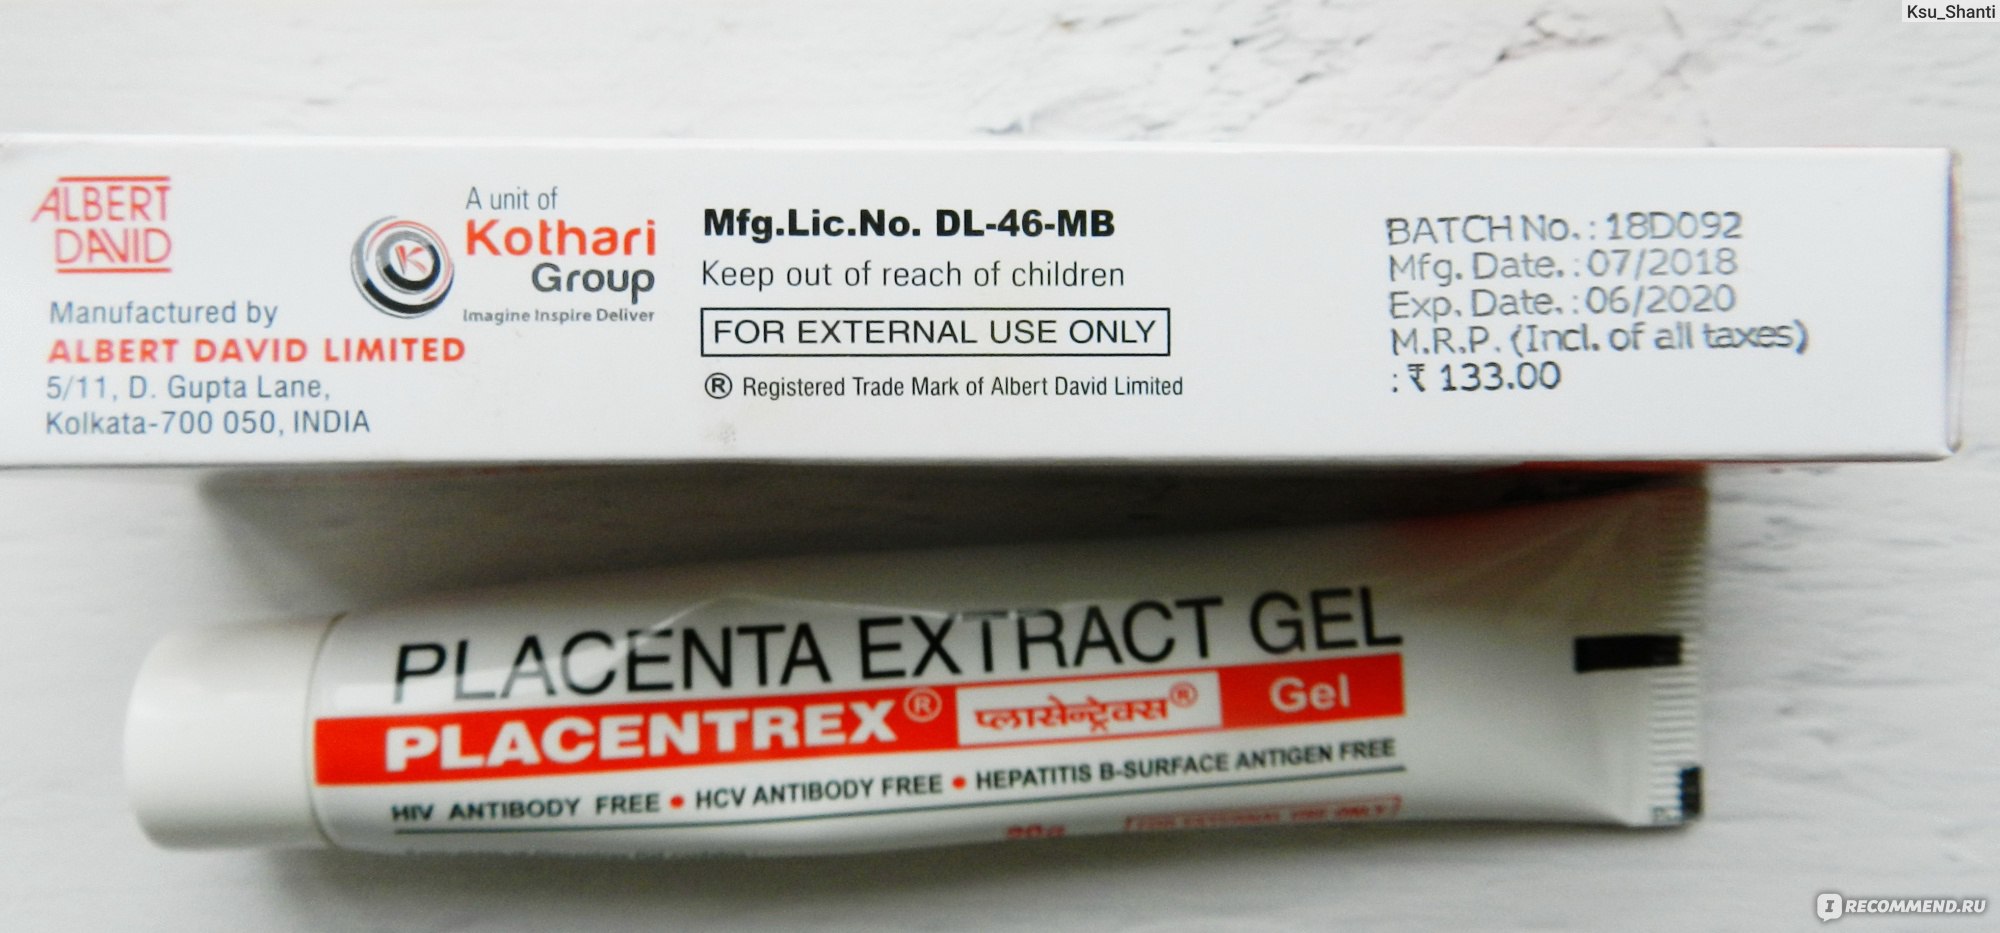 Placentrex gel. Индийский крем плацента.